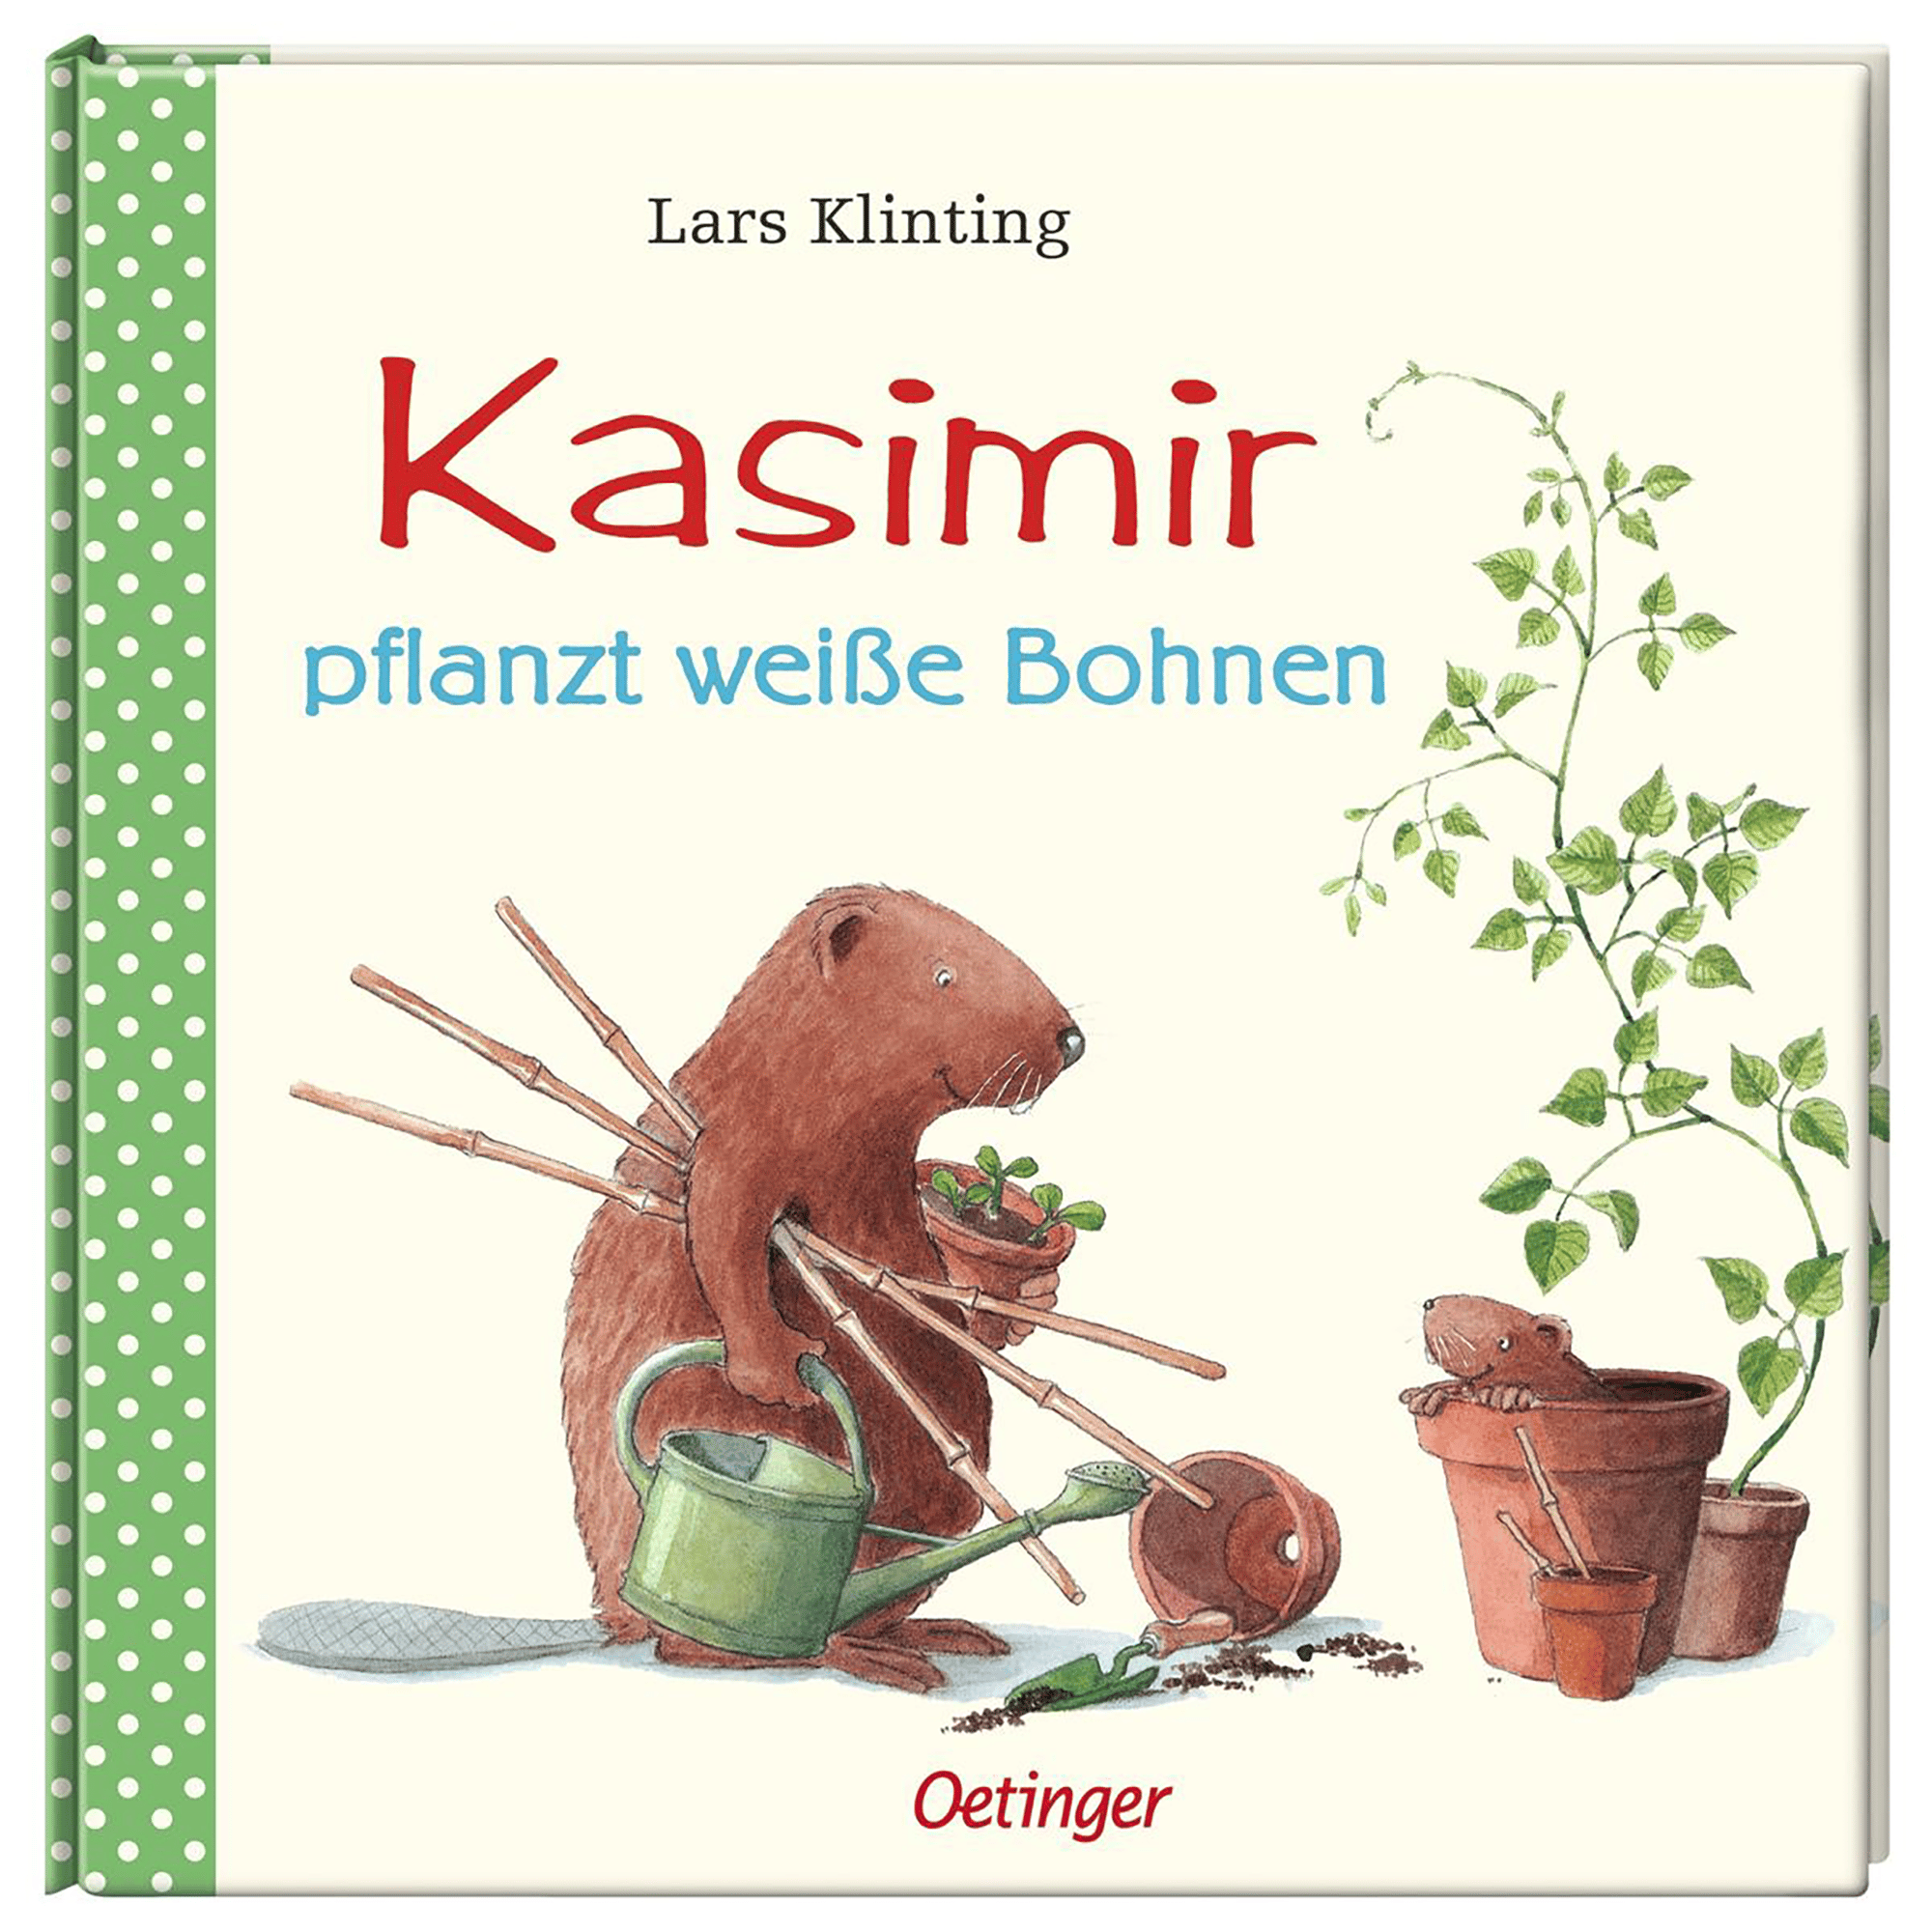 Kasimir pflanzt weiße Bohnen OETINGER Grün 2000583390008 1